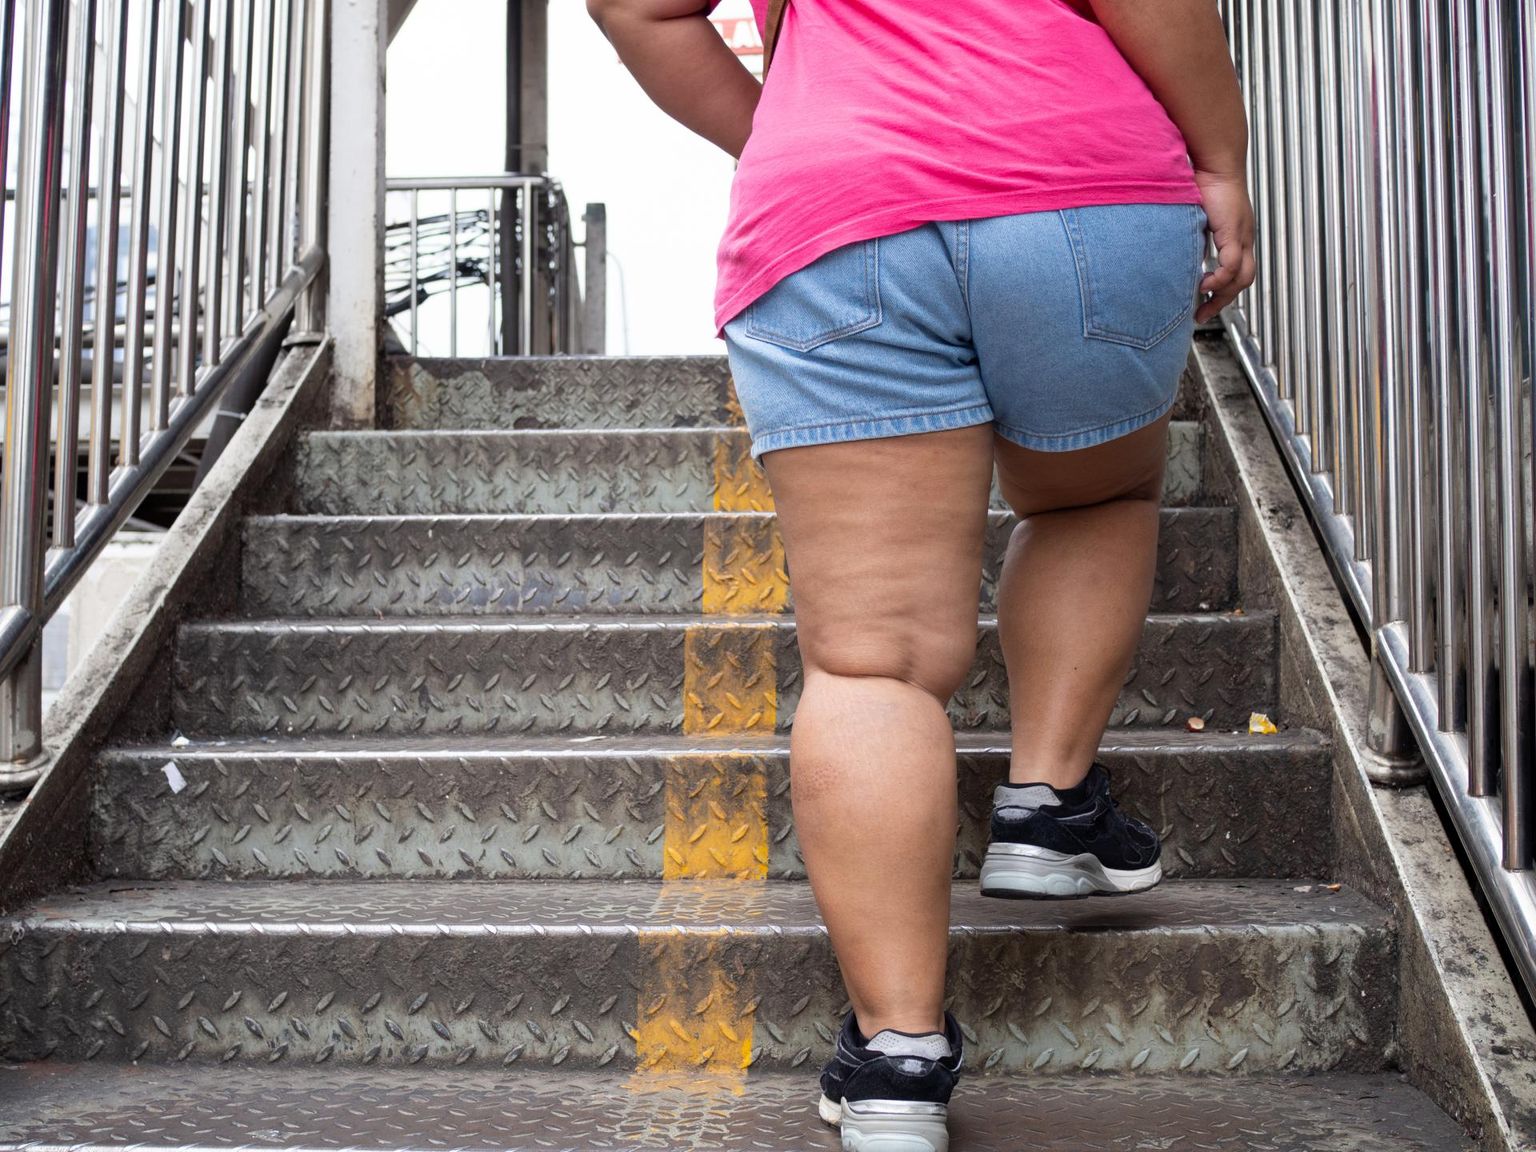 Viimase viie aastakümnega on ülekaalulisuse näitajad kasvanud Euroopas 138 protsenti.